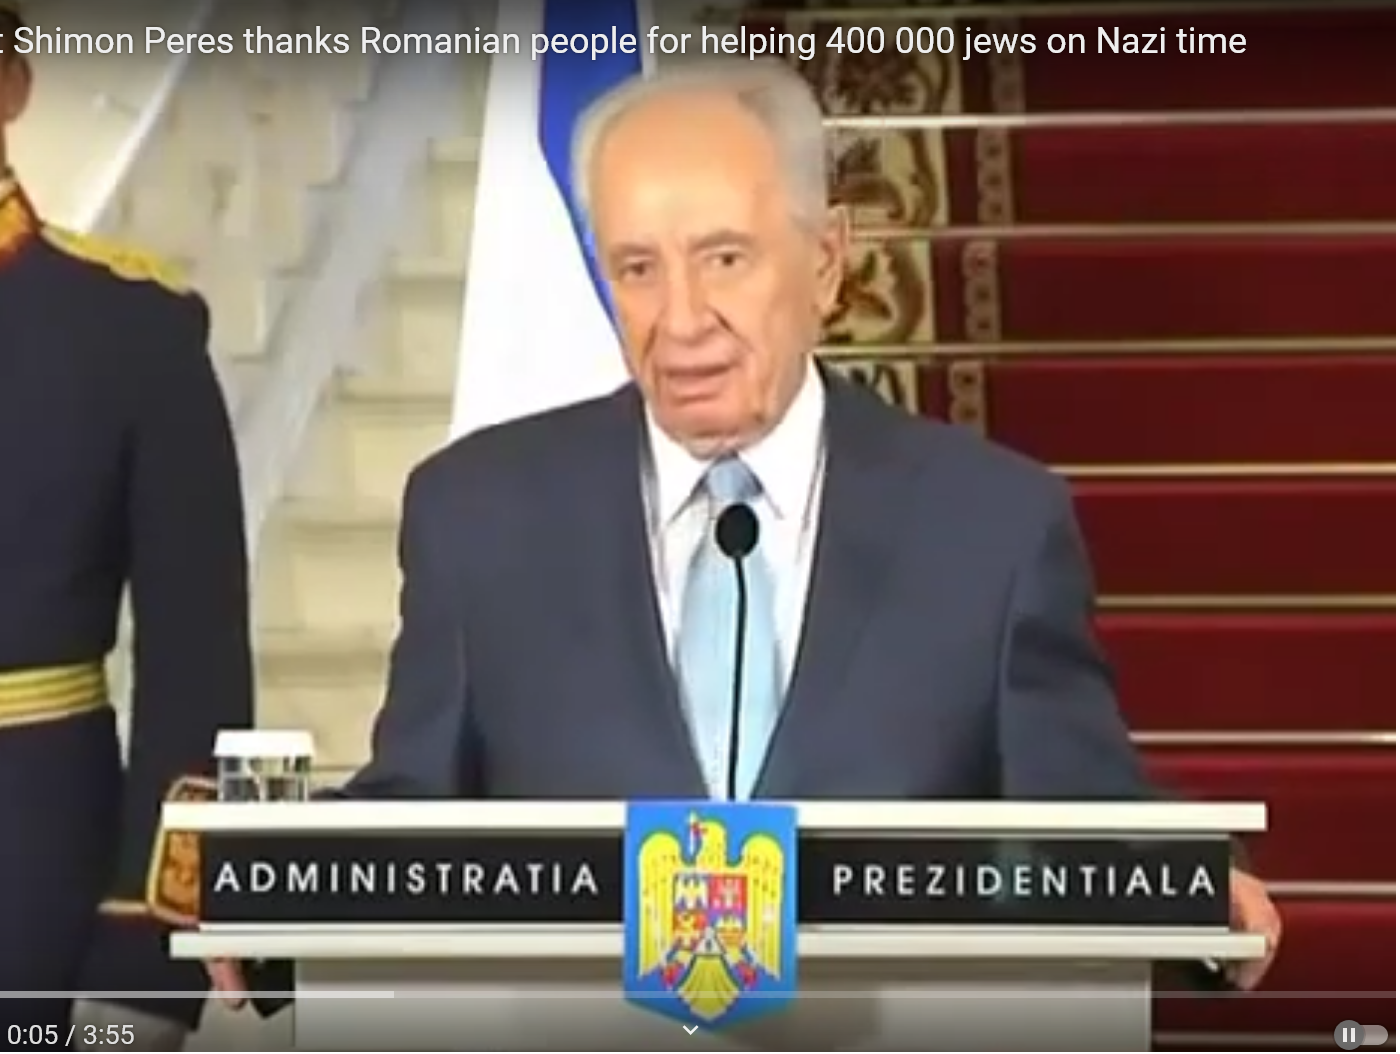 27 ianuarie, Ziua internațională a holocaustului. Shimon Peres: Nu vom uita niciodată că, în cele mai negre zile ale Europei sub nazism, România a salvat viețile multor evrei iar 400.000 dintre ei au mers și au clădit Israelul. Mulțumesc poporului român!